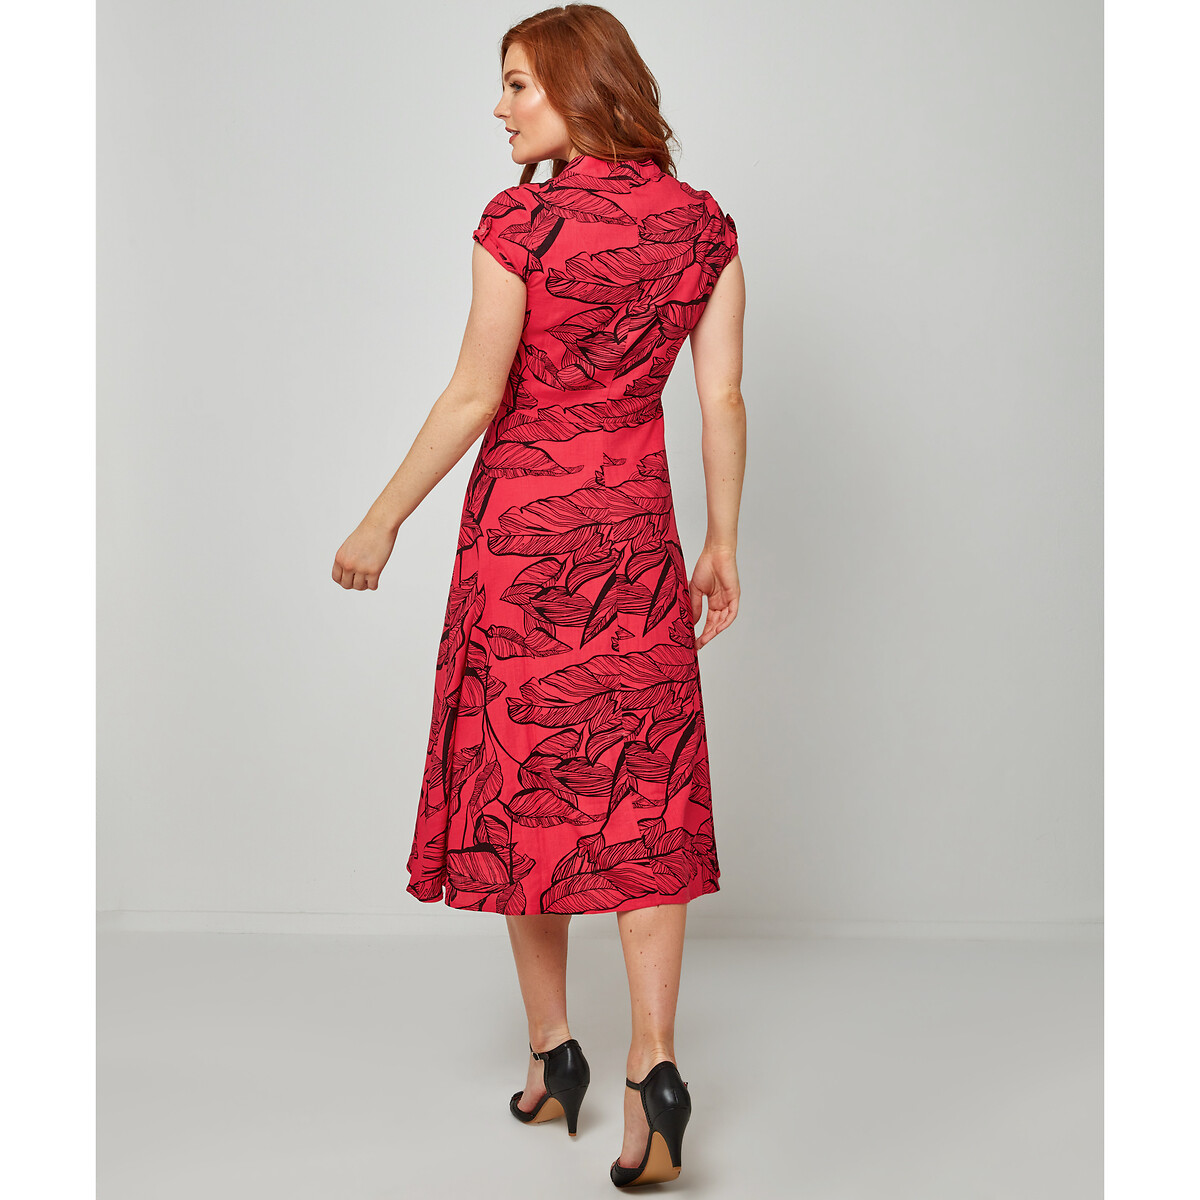 Платье-миди JOE BROWNS С короткими рукавами 42 красный, размер 42 - фото 2